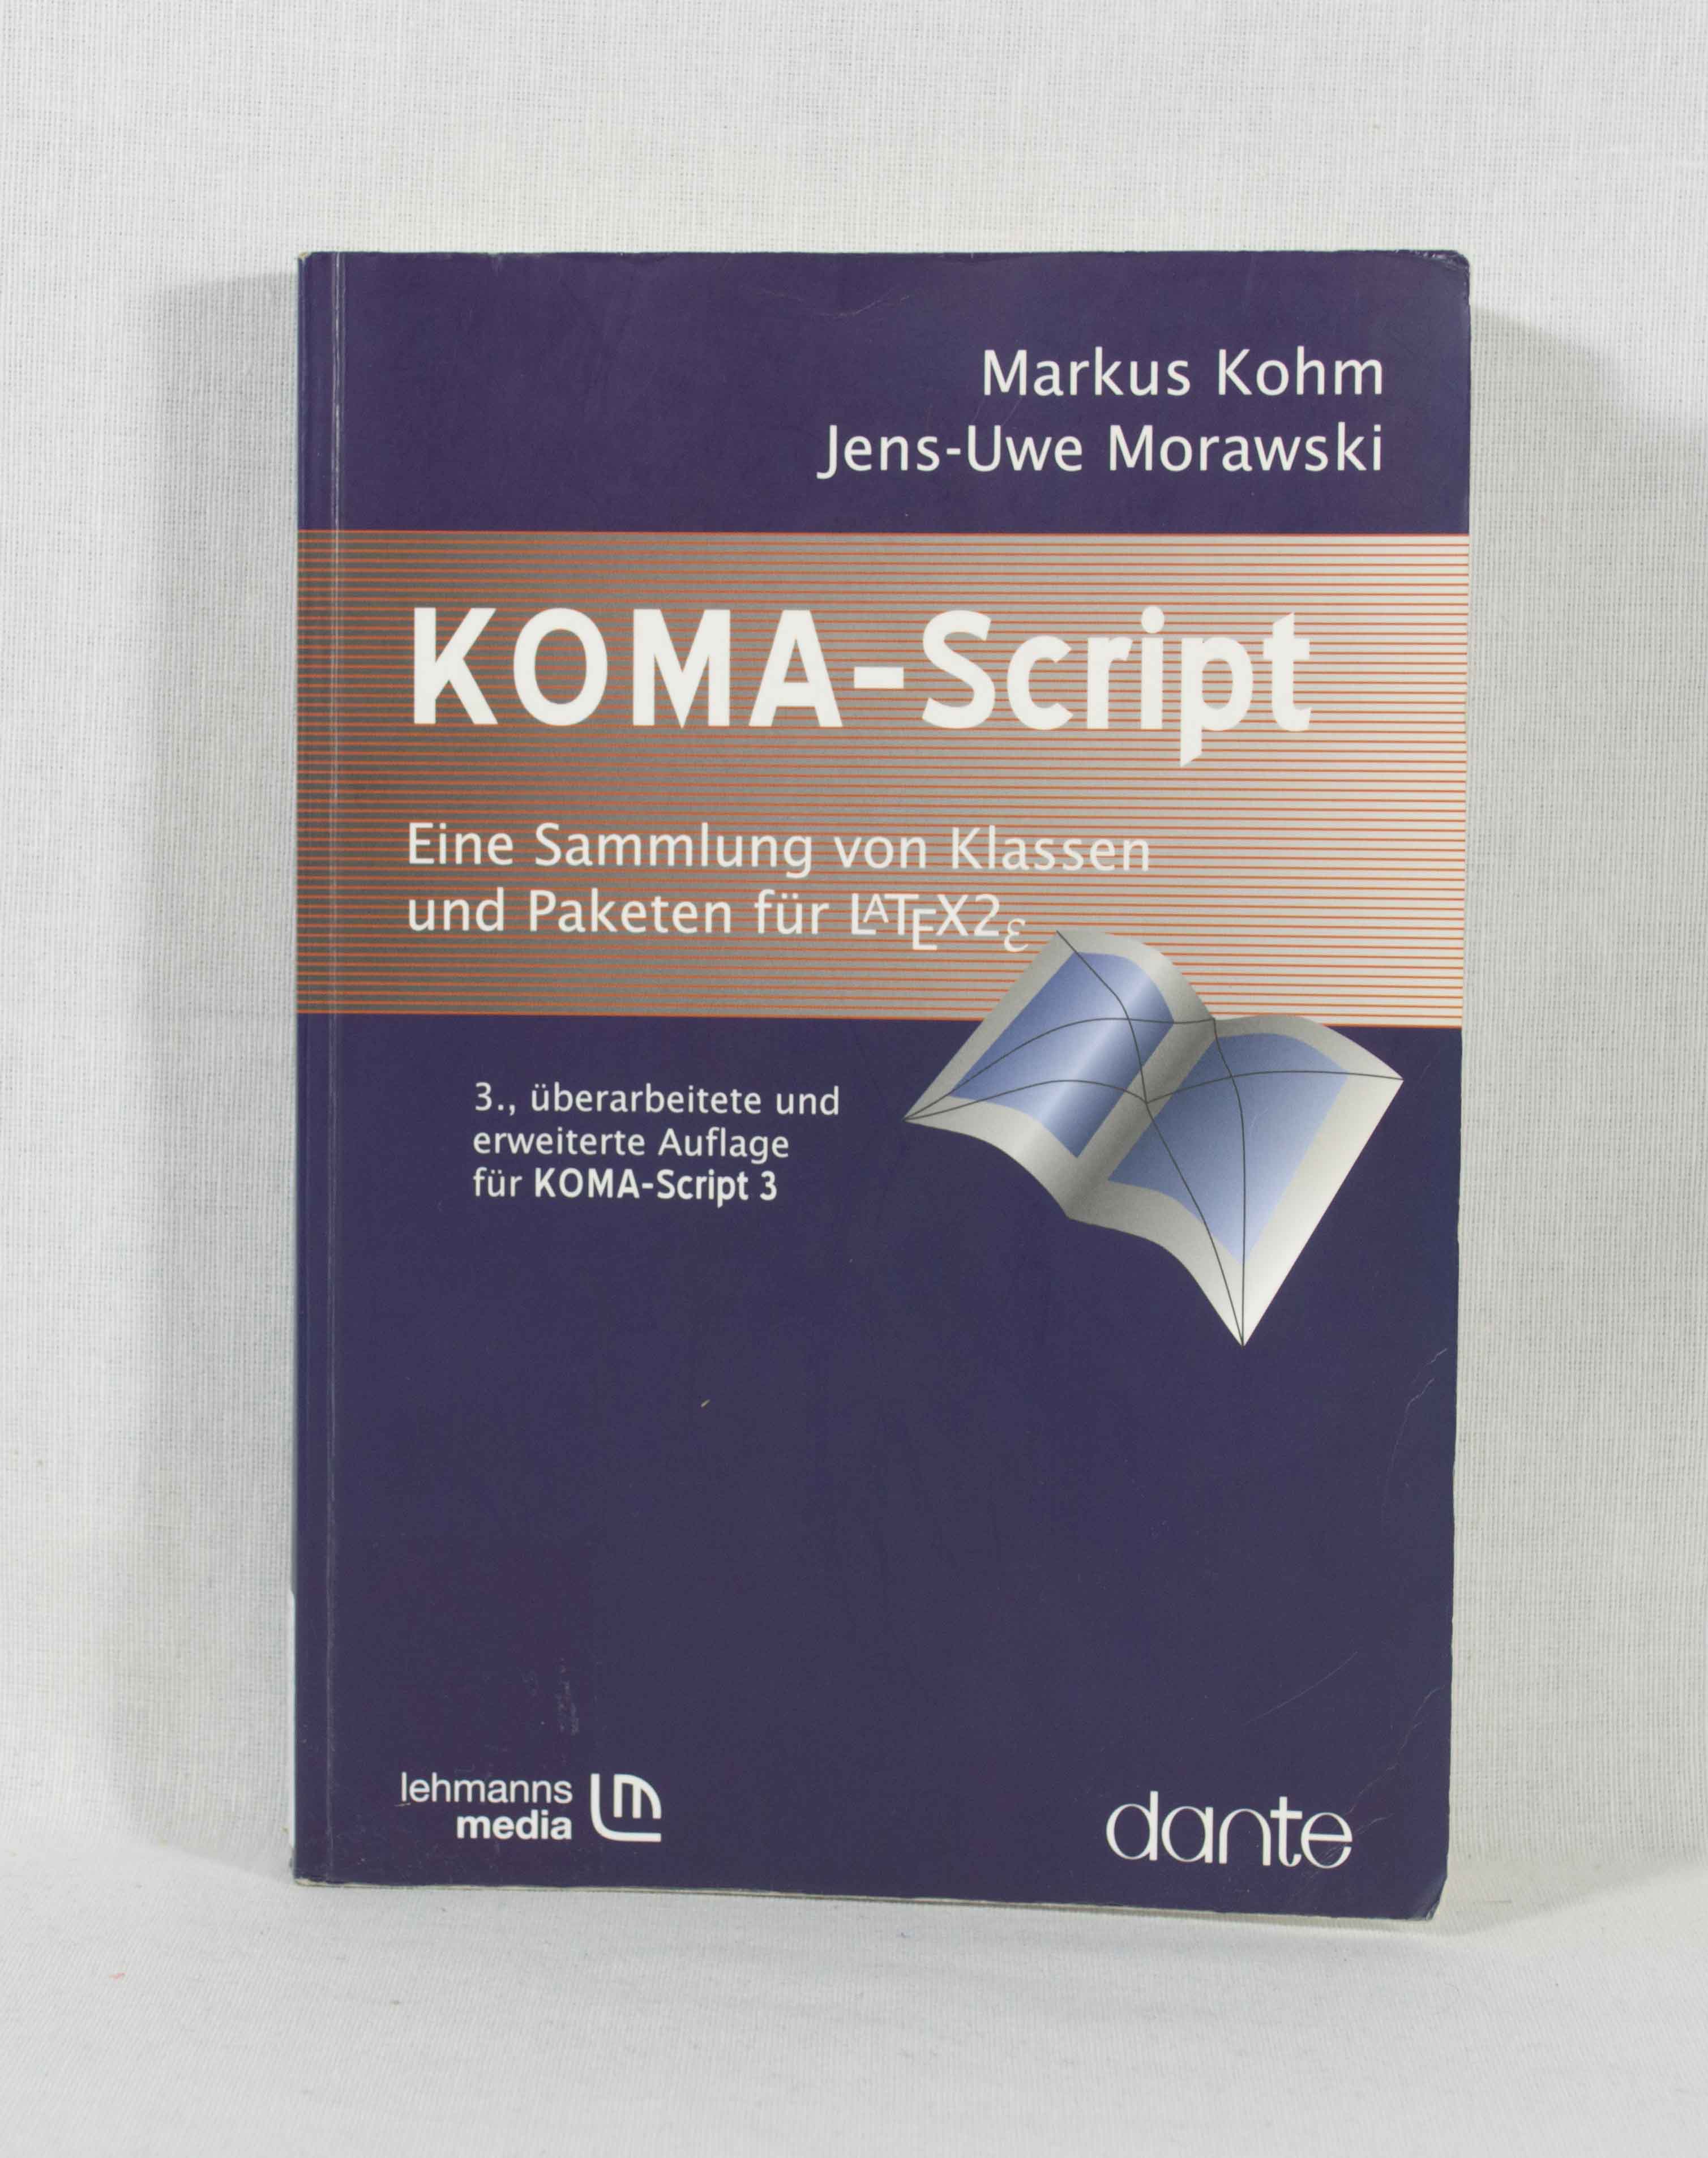 KOMA-Script: Eine Sammlung von Klassen und Paketen für LaTeX2Îµ [LaTeX2 epsilon]: Anleitung zu Version 3.00. - Kohm, Markus und Jens-Uwe Morawski